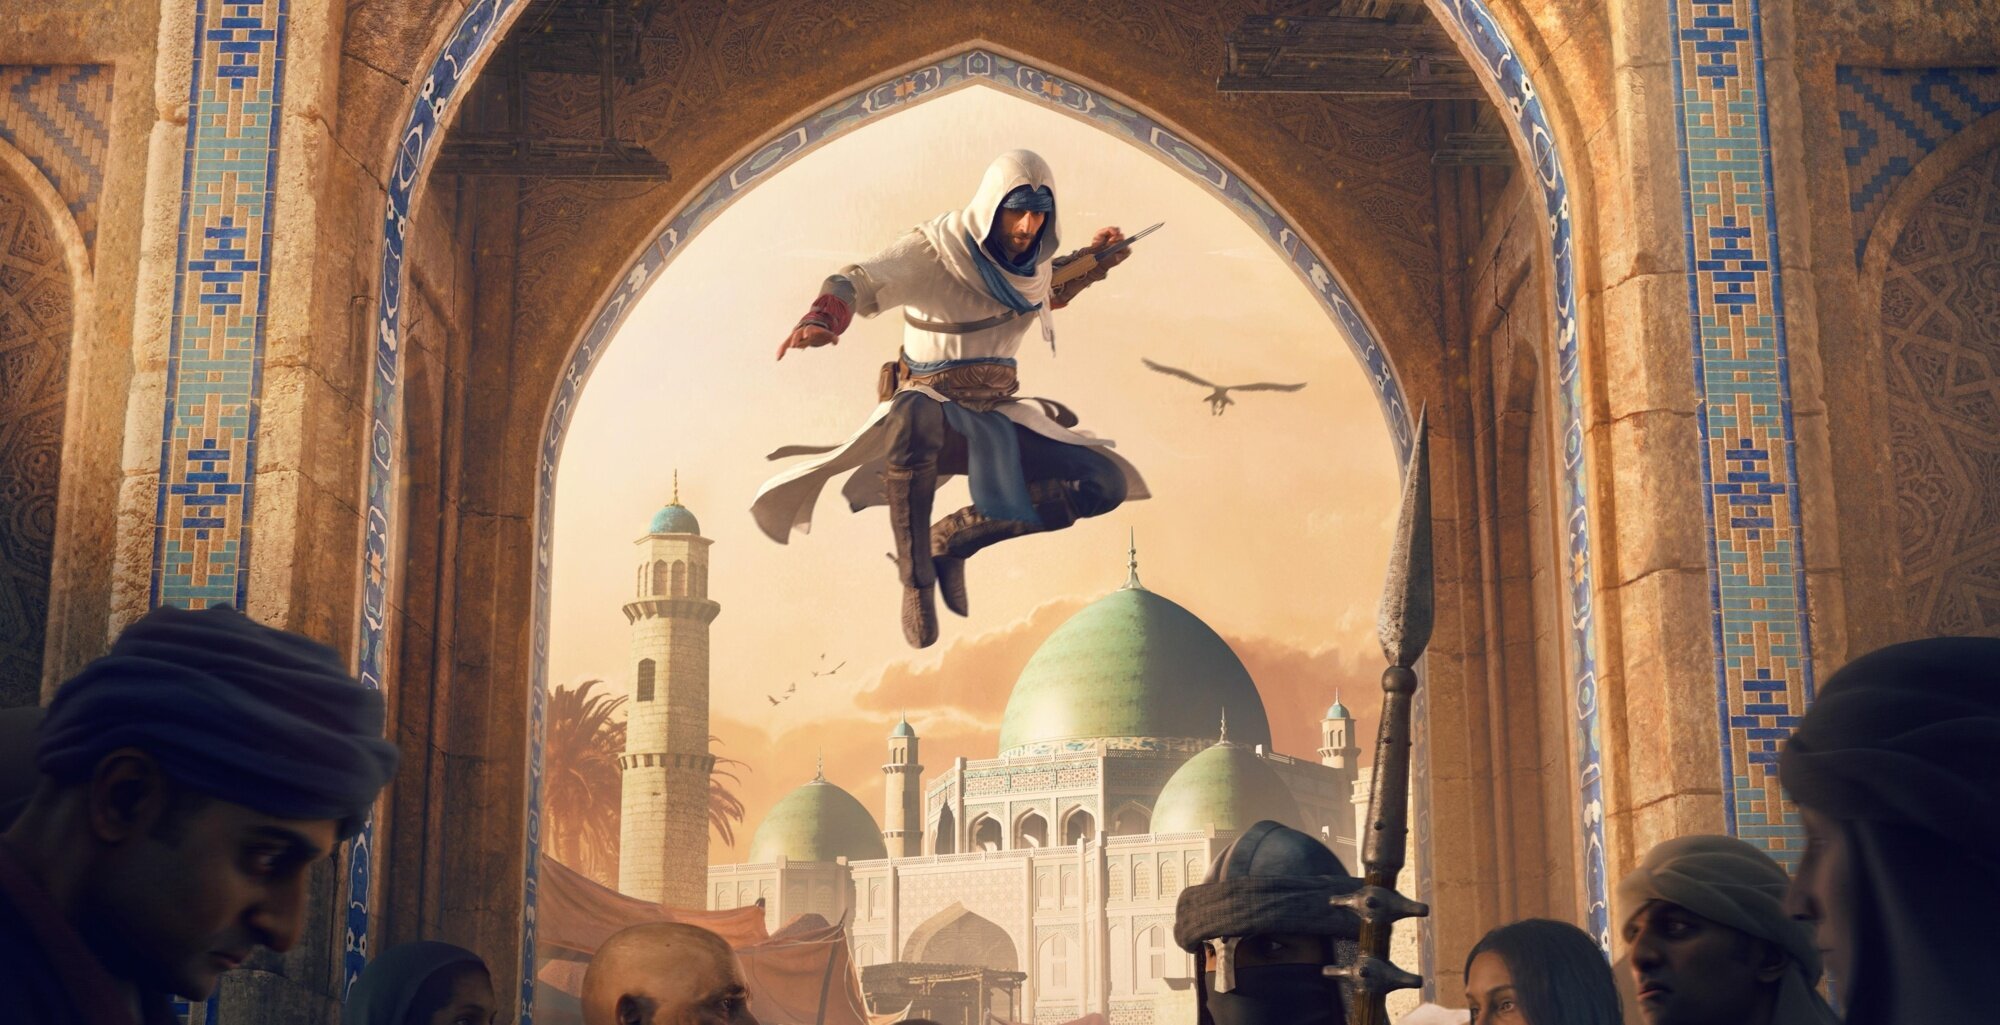 Bagdád, Japonsko, Čína i čarodějnice. Ubisoft ukázal nové Assassin's Creed hry